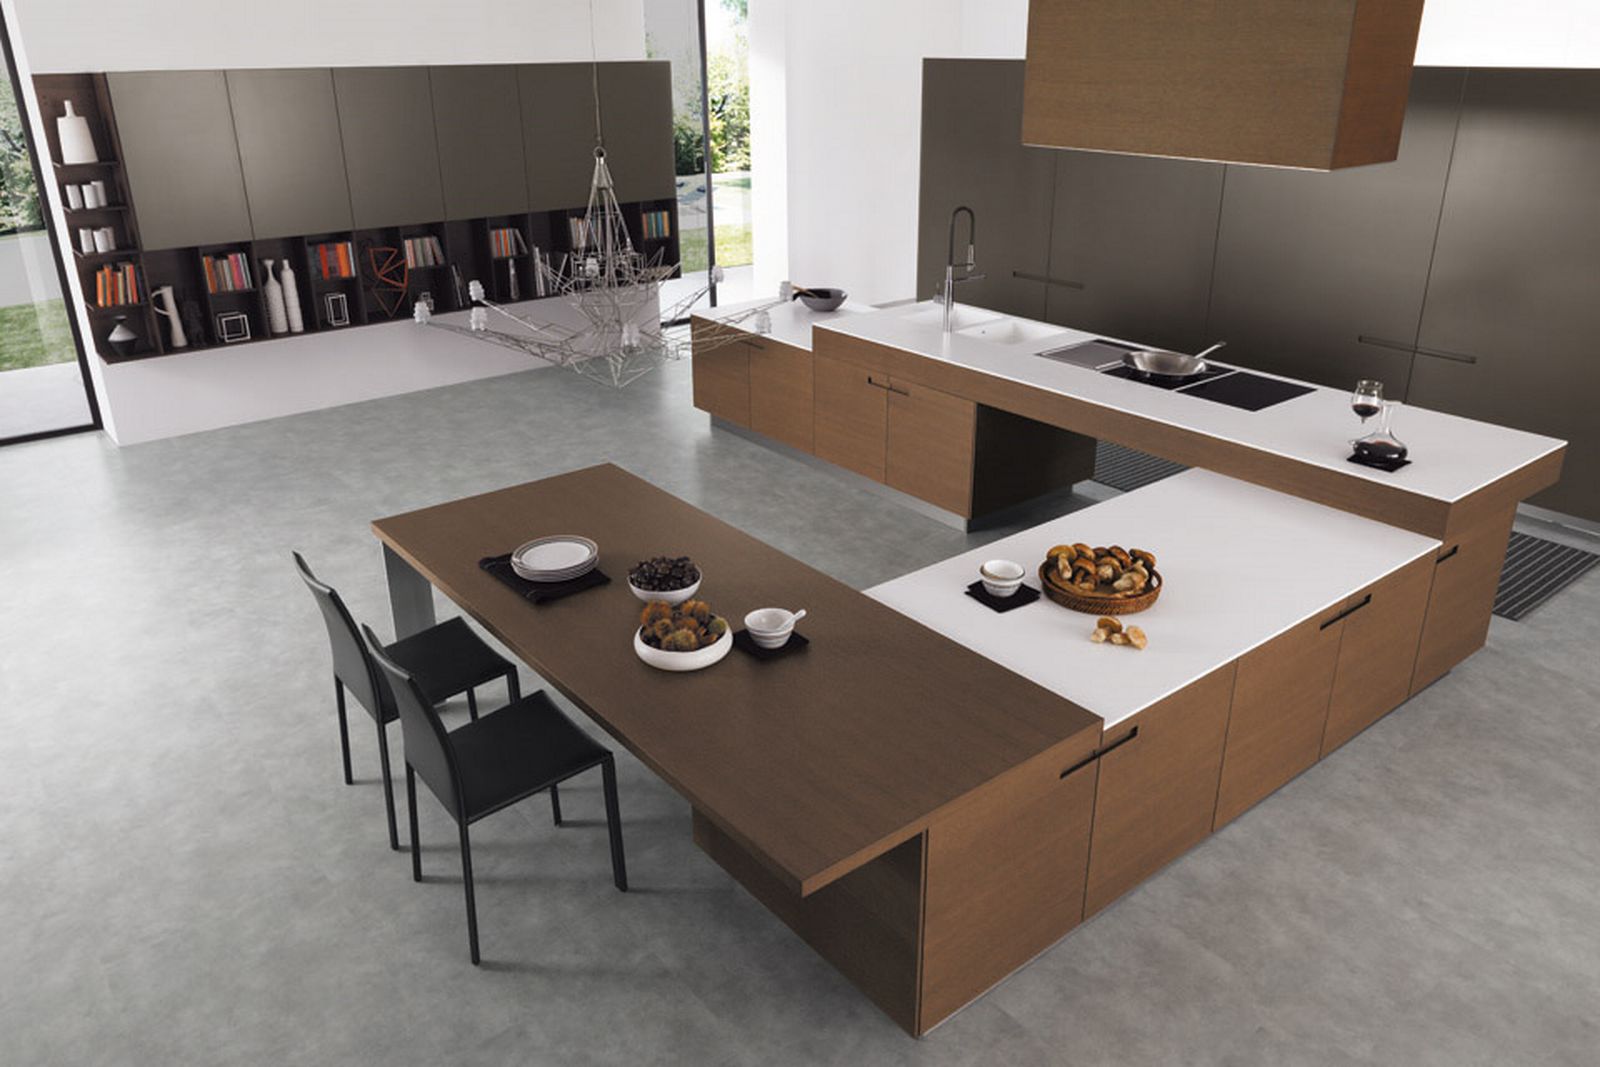 Home design inspiration with modern minimalist kitchen